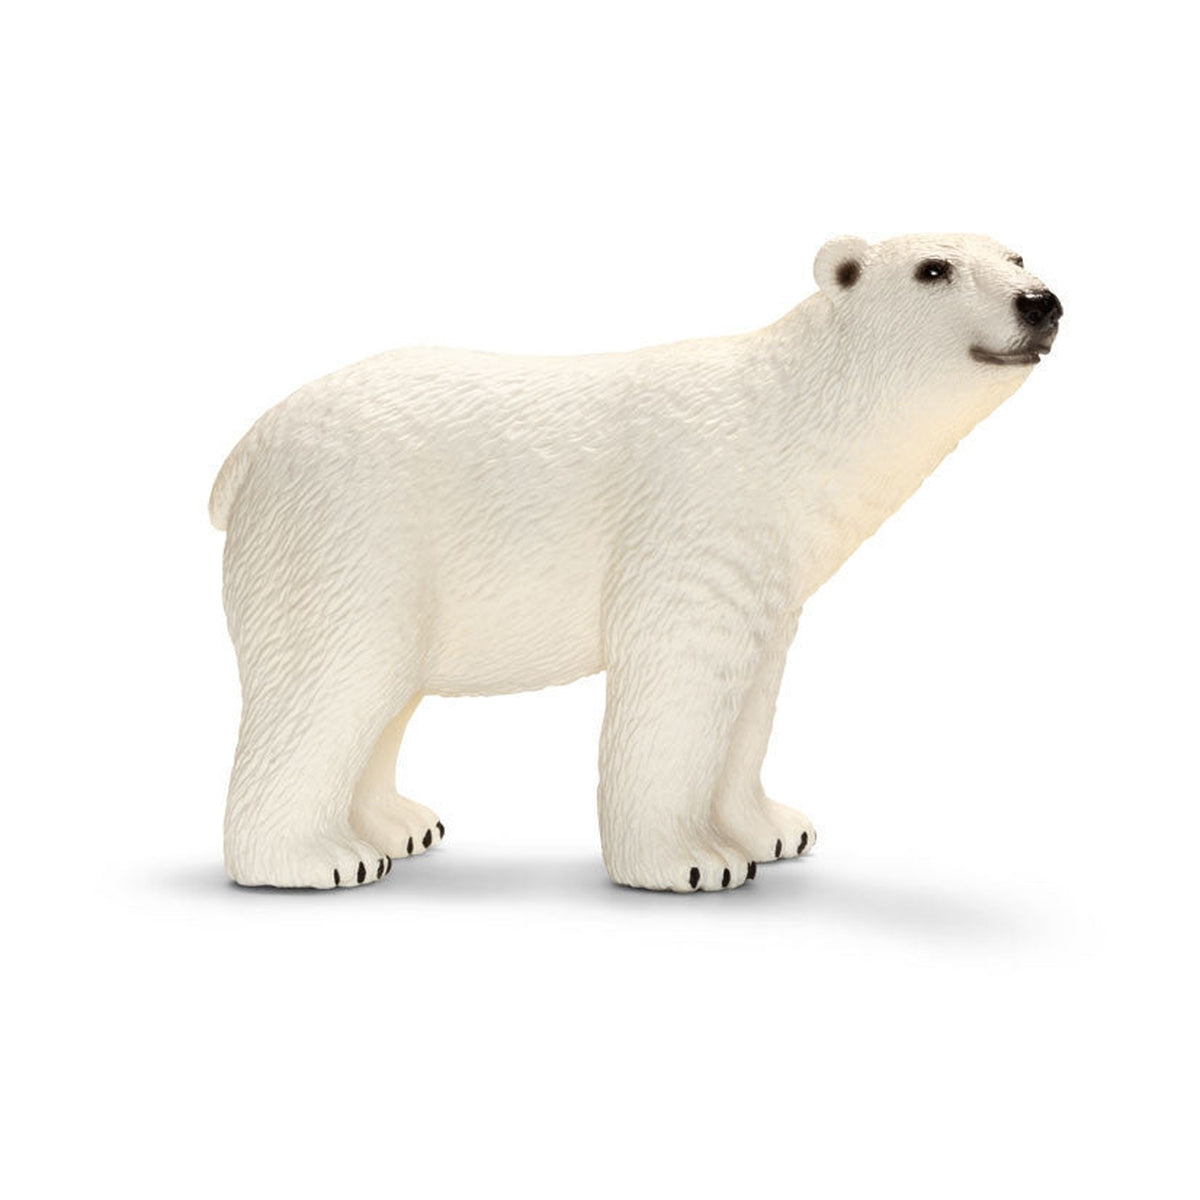 Schleich polar bear-people, animals & lands-Schleich-Dilly Dally Kids